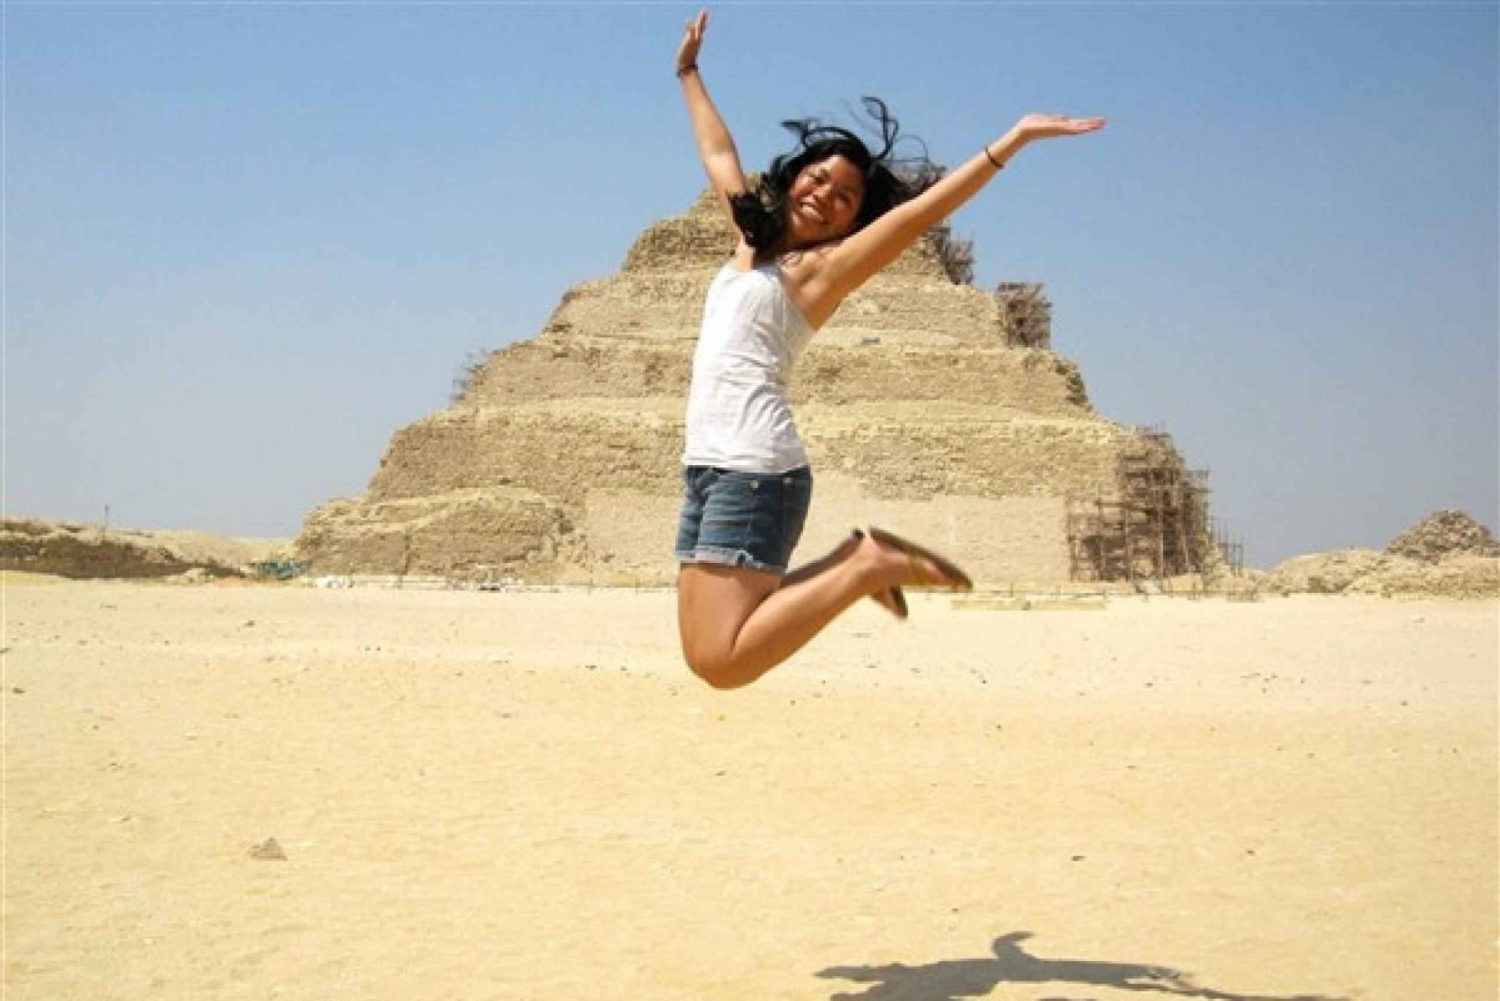 Il Cairo: Piramidi, Sakkara e Memphis Tour privato con pranzo